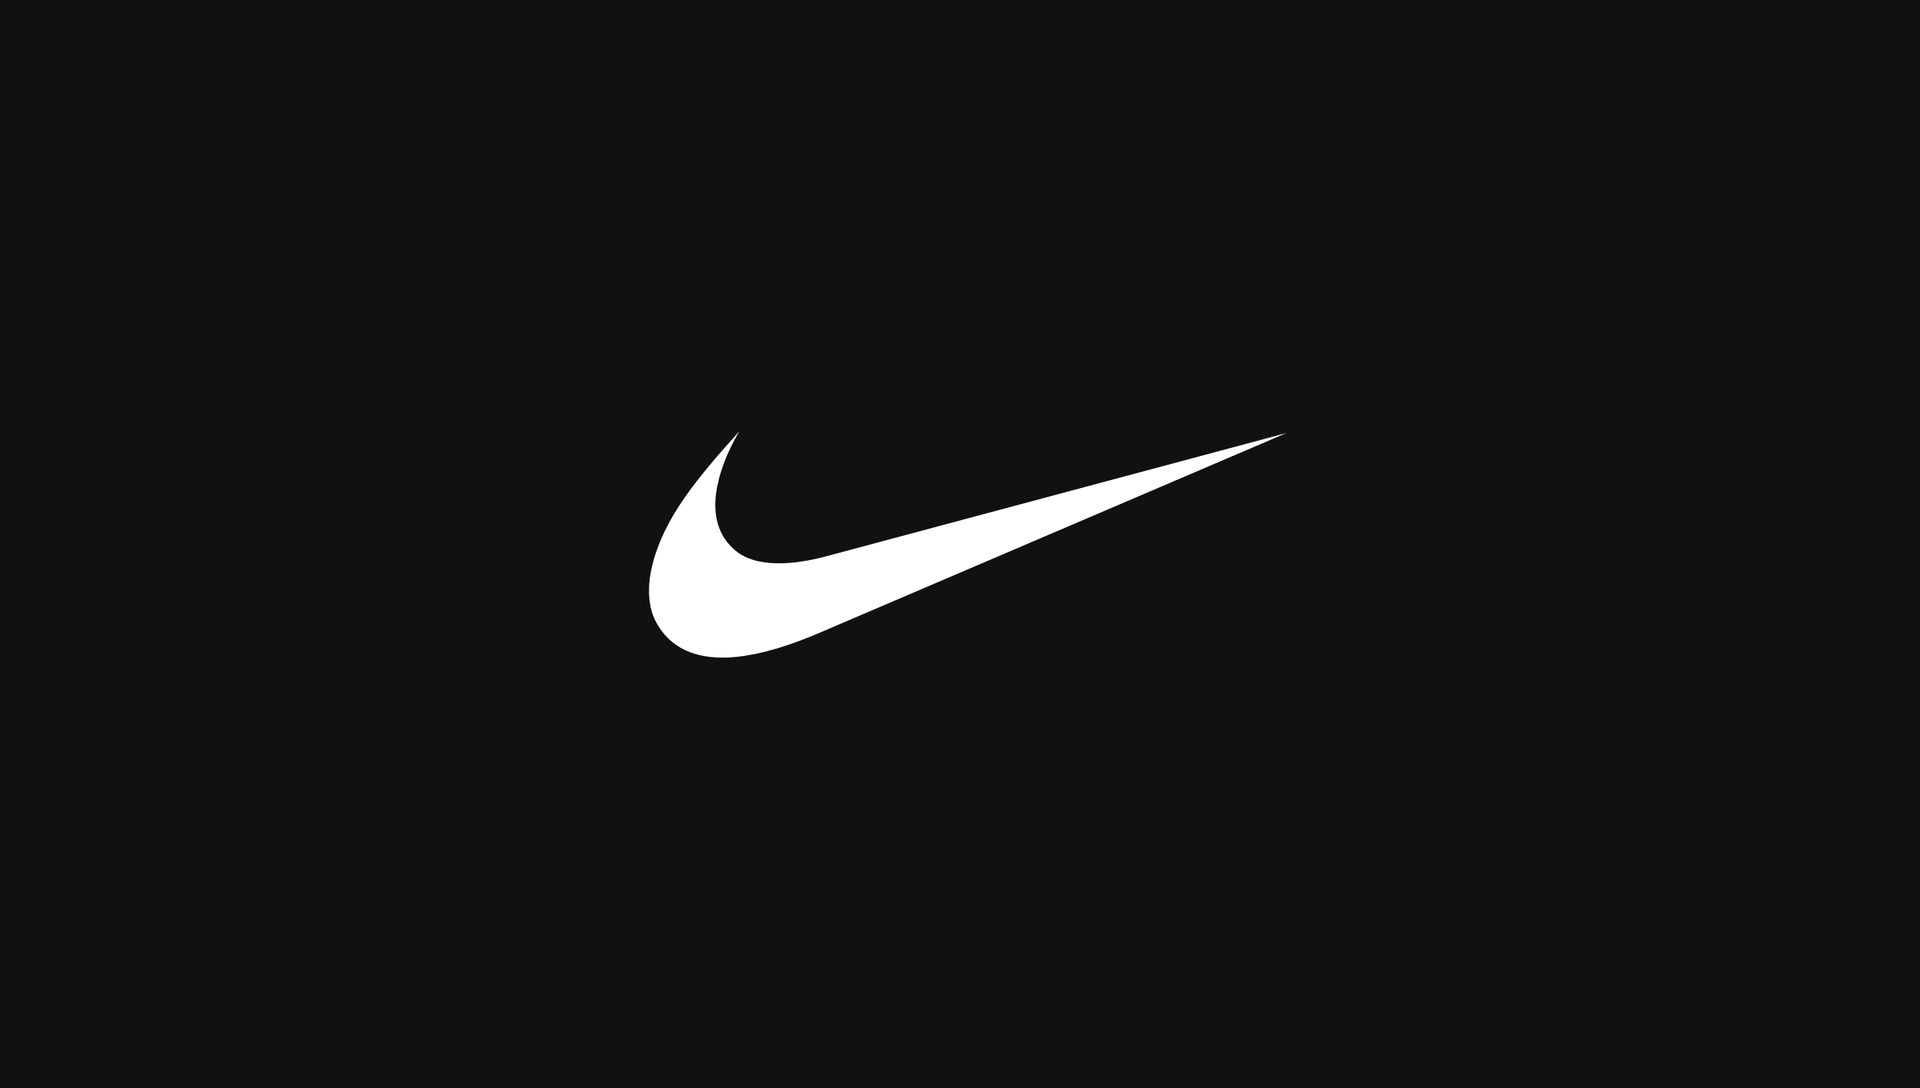 Sportswear Firm Nike to Launch Web3 Platform .SWOOSH in 2023